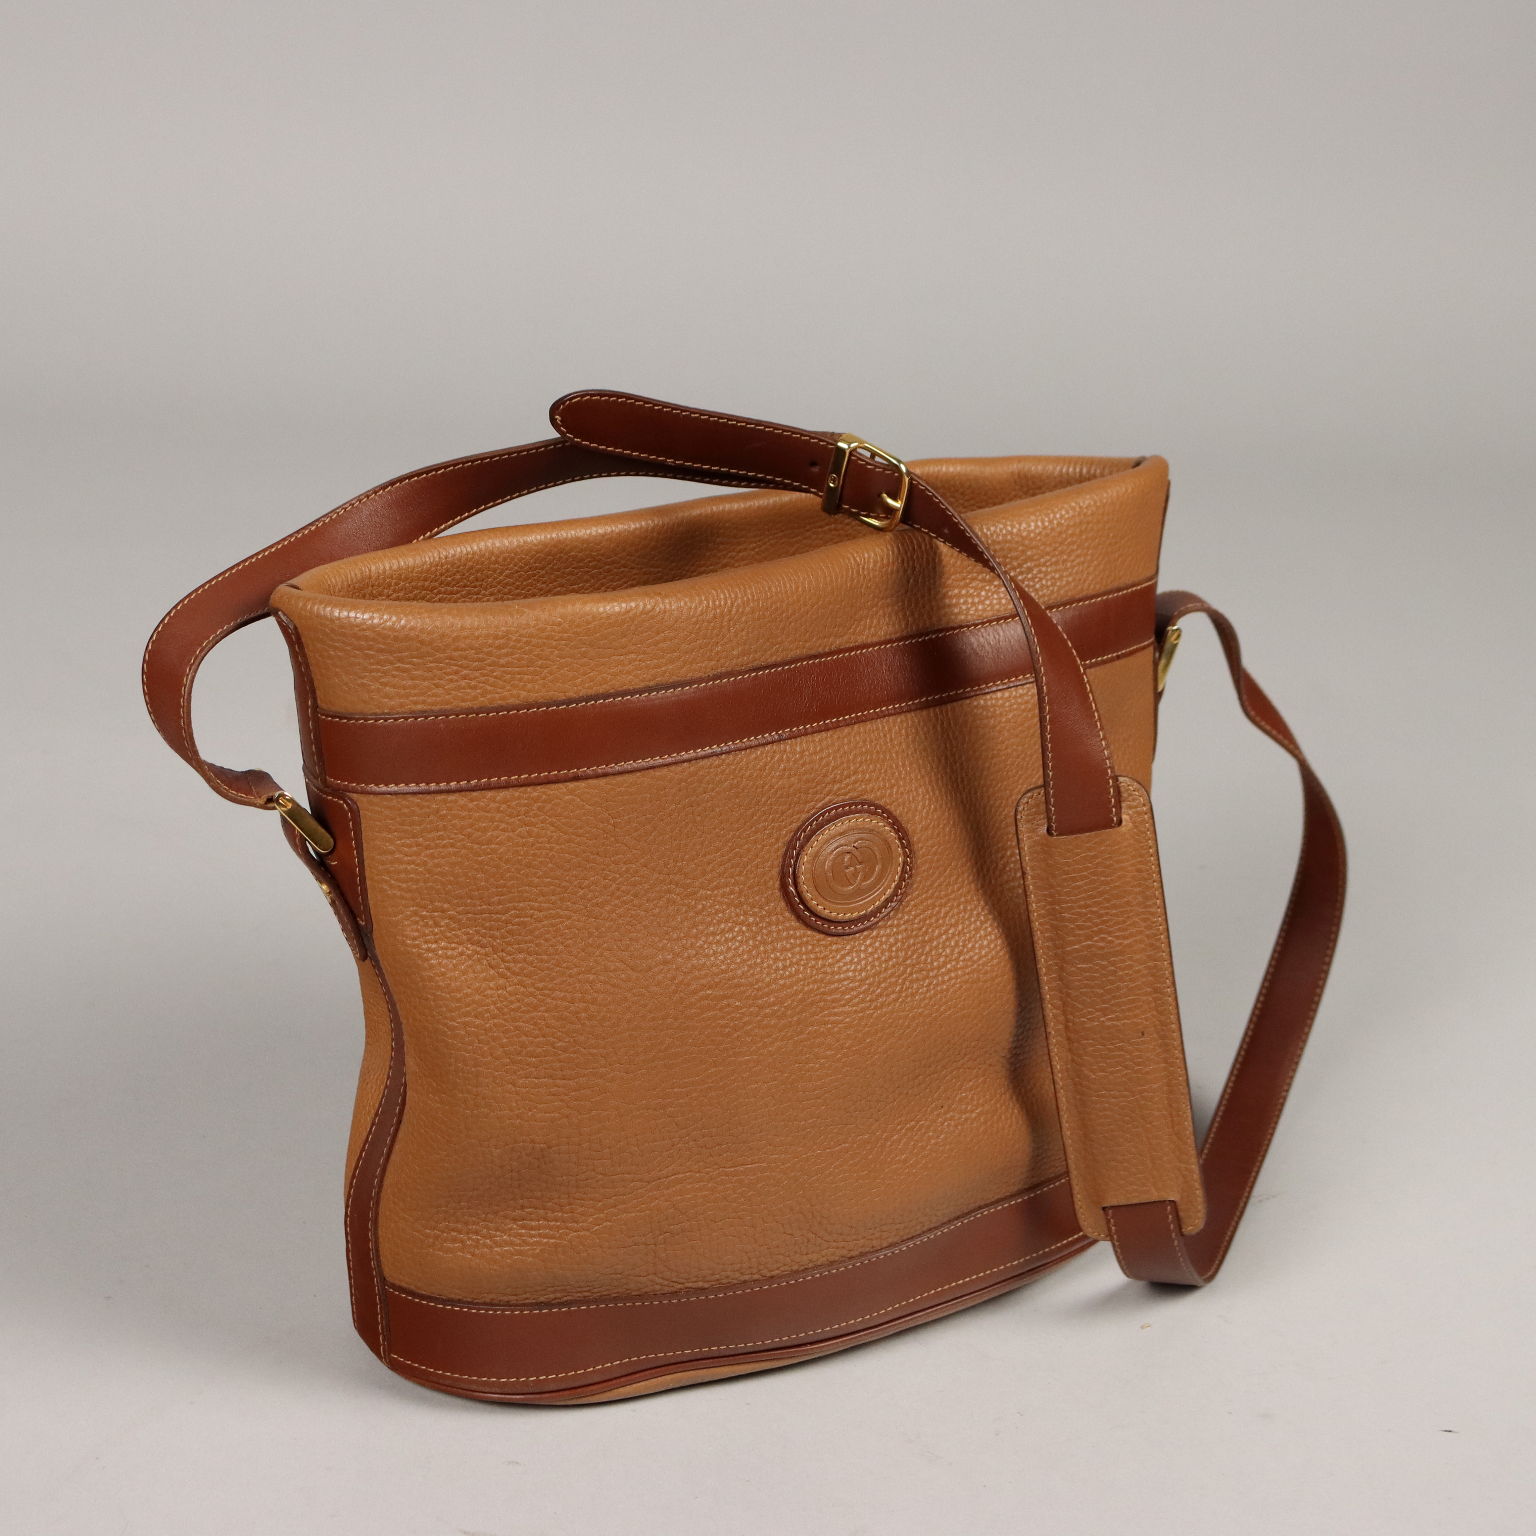 GUCCI VINTAGE 60s Brown Leather HANDBAG Top WOOD Handle Bag WOOD RARE AS